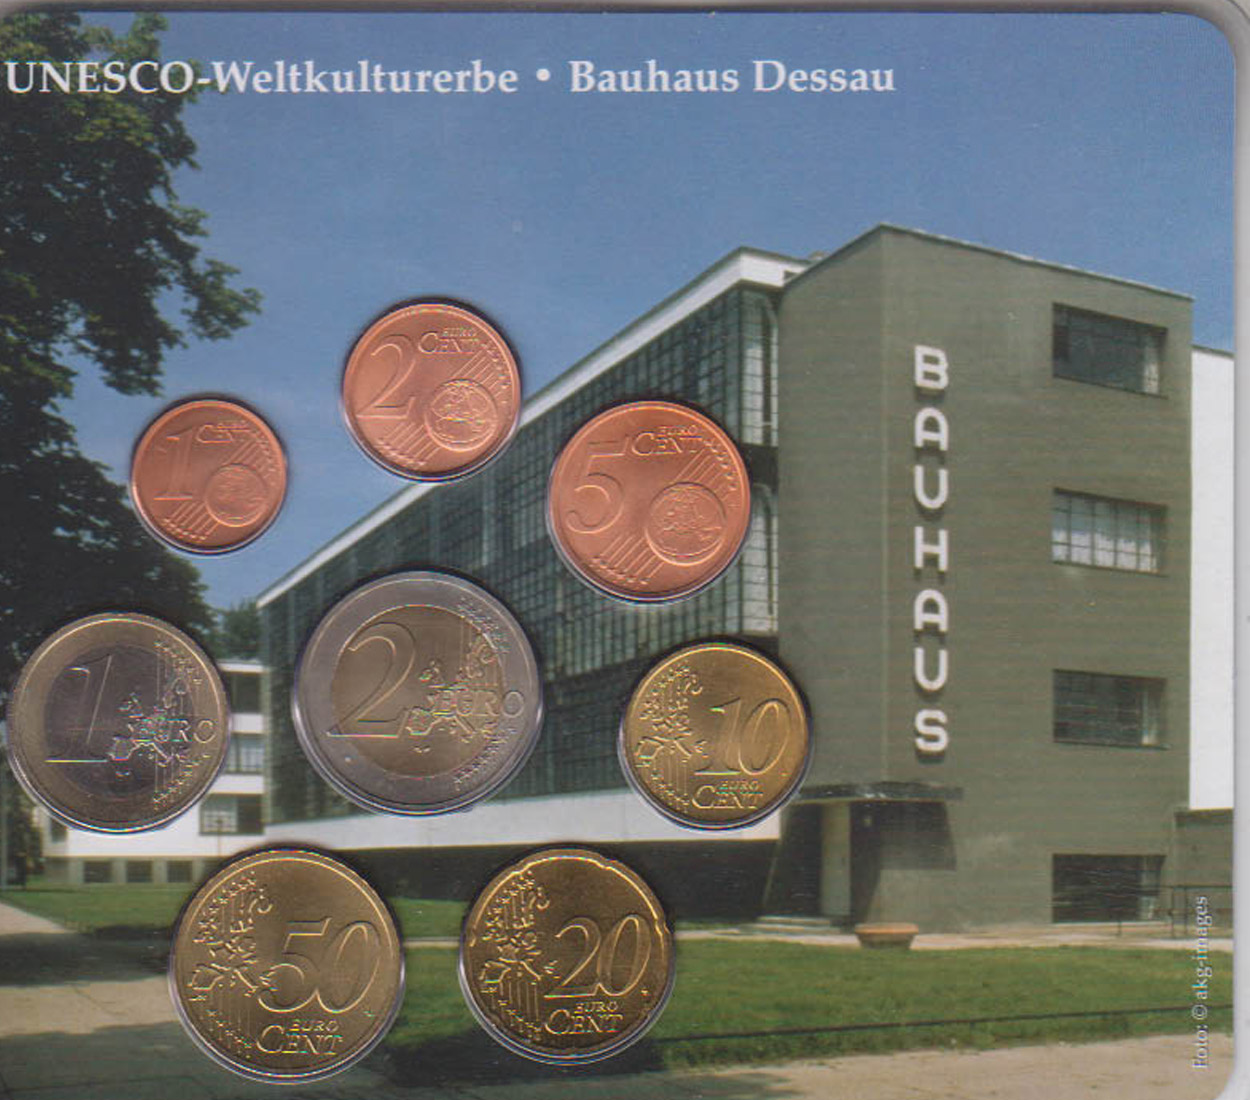  Sonder-KMS BRD mit *UNESCO-Weltkulturerbe - Bauhaus Dessau* 2003 nur 500 Stück!   